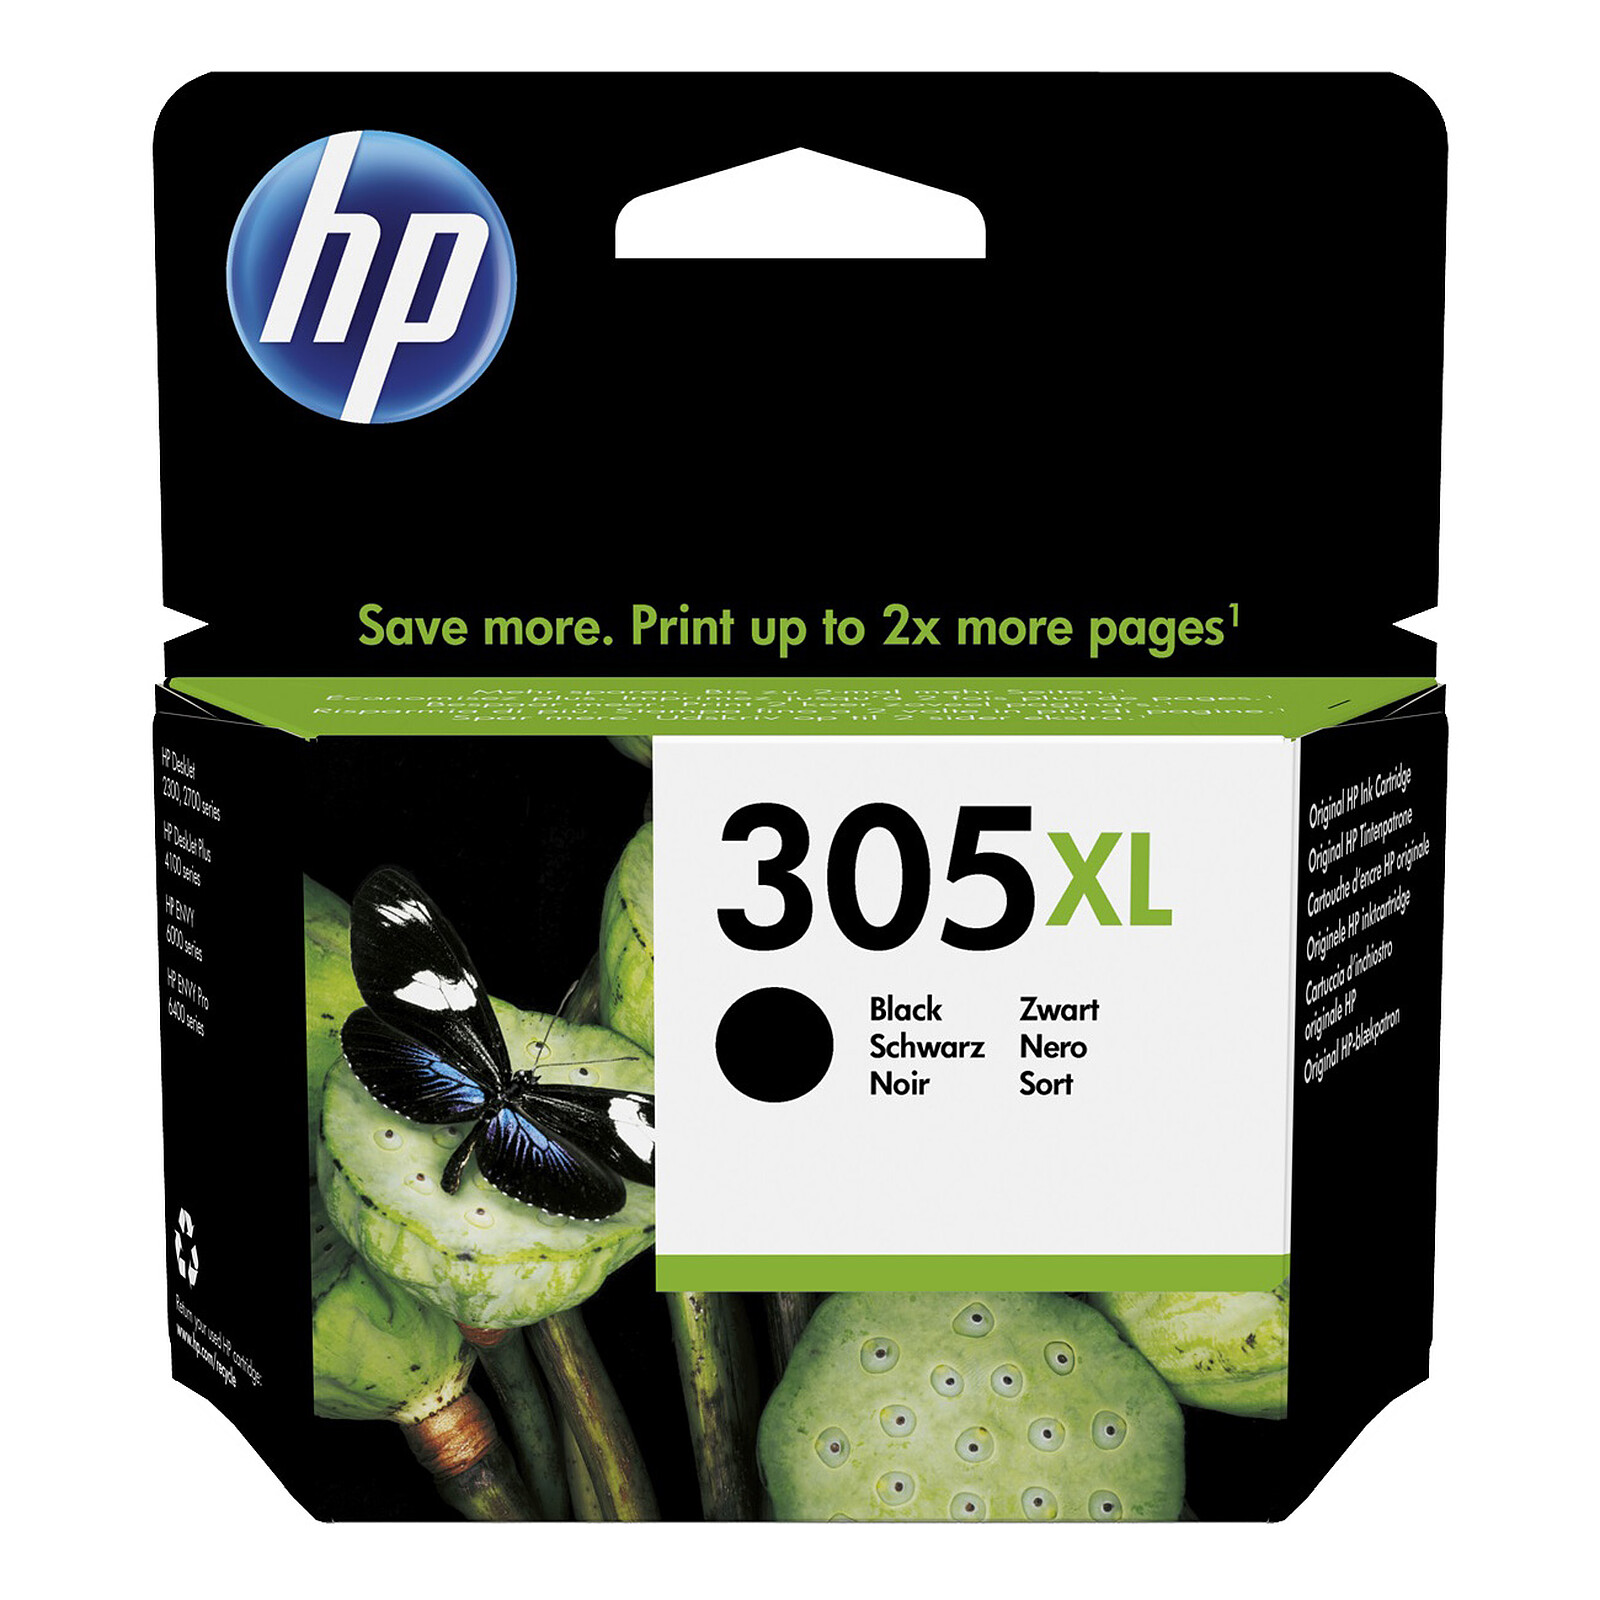 Cartouches d'encre Compatible pour HP 305 XL, Multipack de 2 cartouches d' encre pour